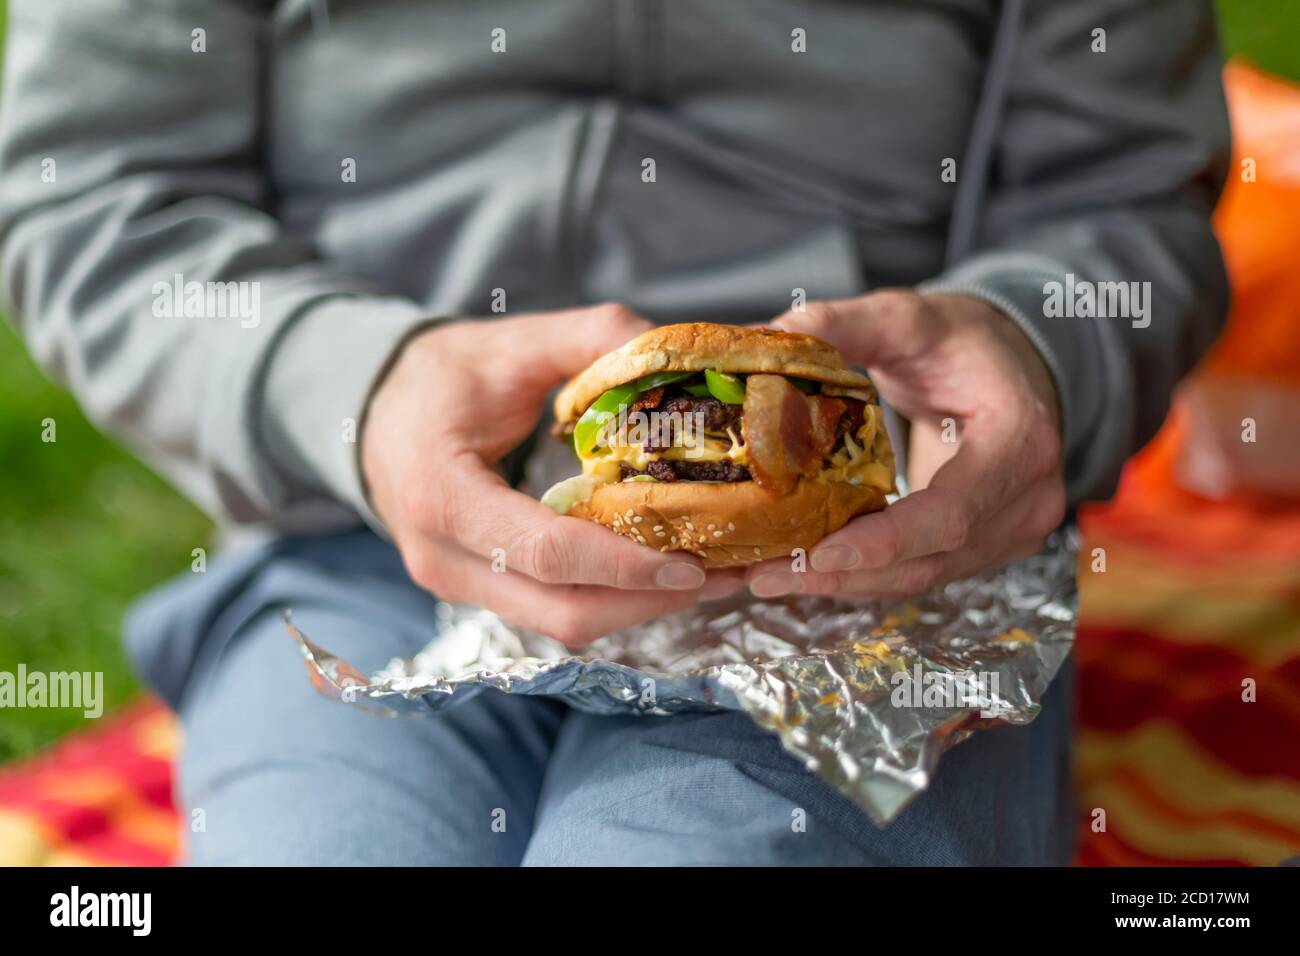 Un homme est assis sur une couverture de pique-nique avec un morceau de papier d'aluminium sur ses genoux, tenant un hamburger entre ses mains; North Vancouver, Colombie-Britannique, Canada Banque D'Images